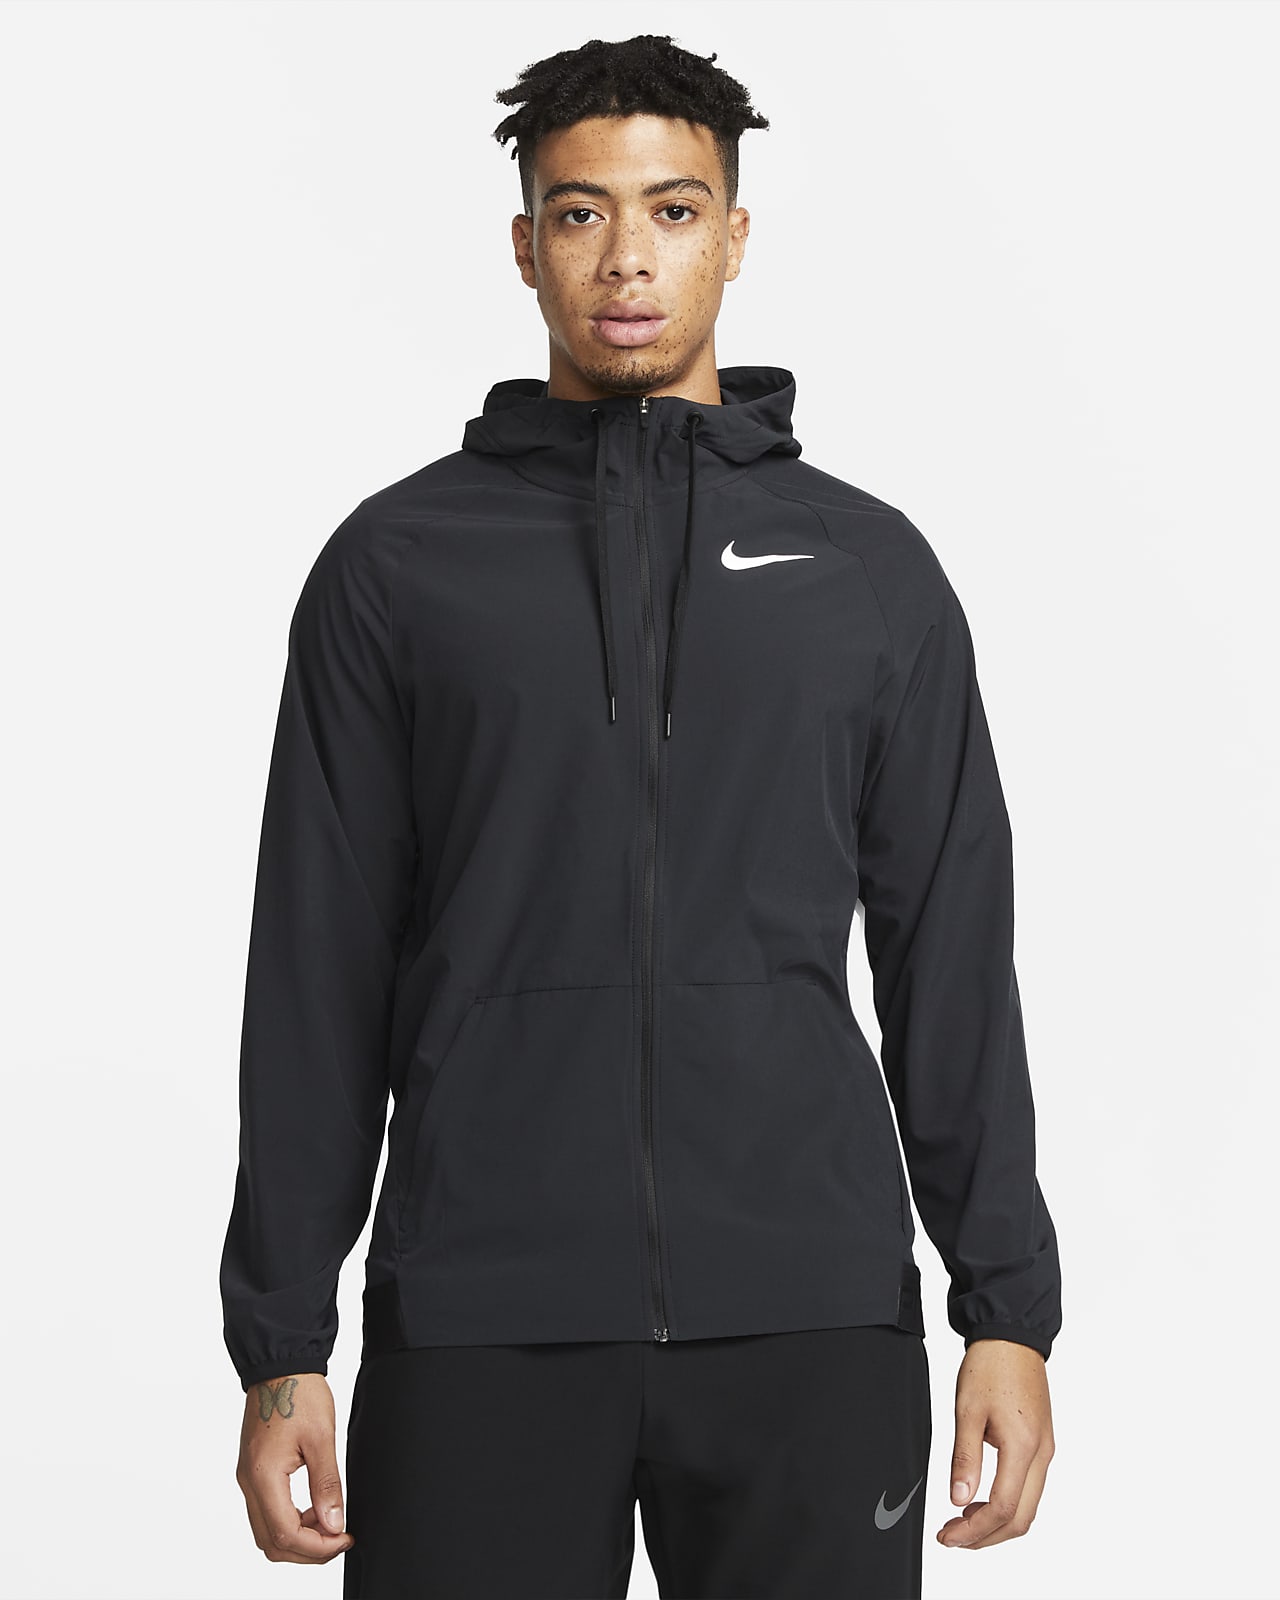 grote Oceaan nerveus worden Sloppenwijk Nike Pro Dri-FIT Flex Vent Max Men's Full-Zip Hooded Training Jacket. Nike .com